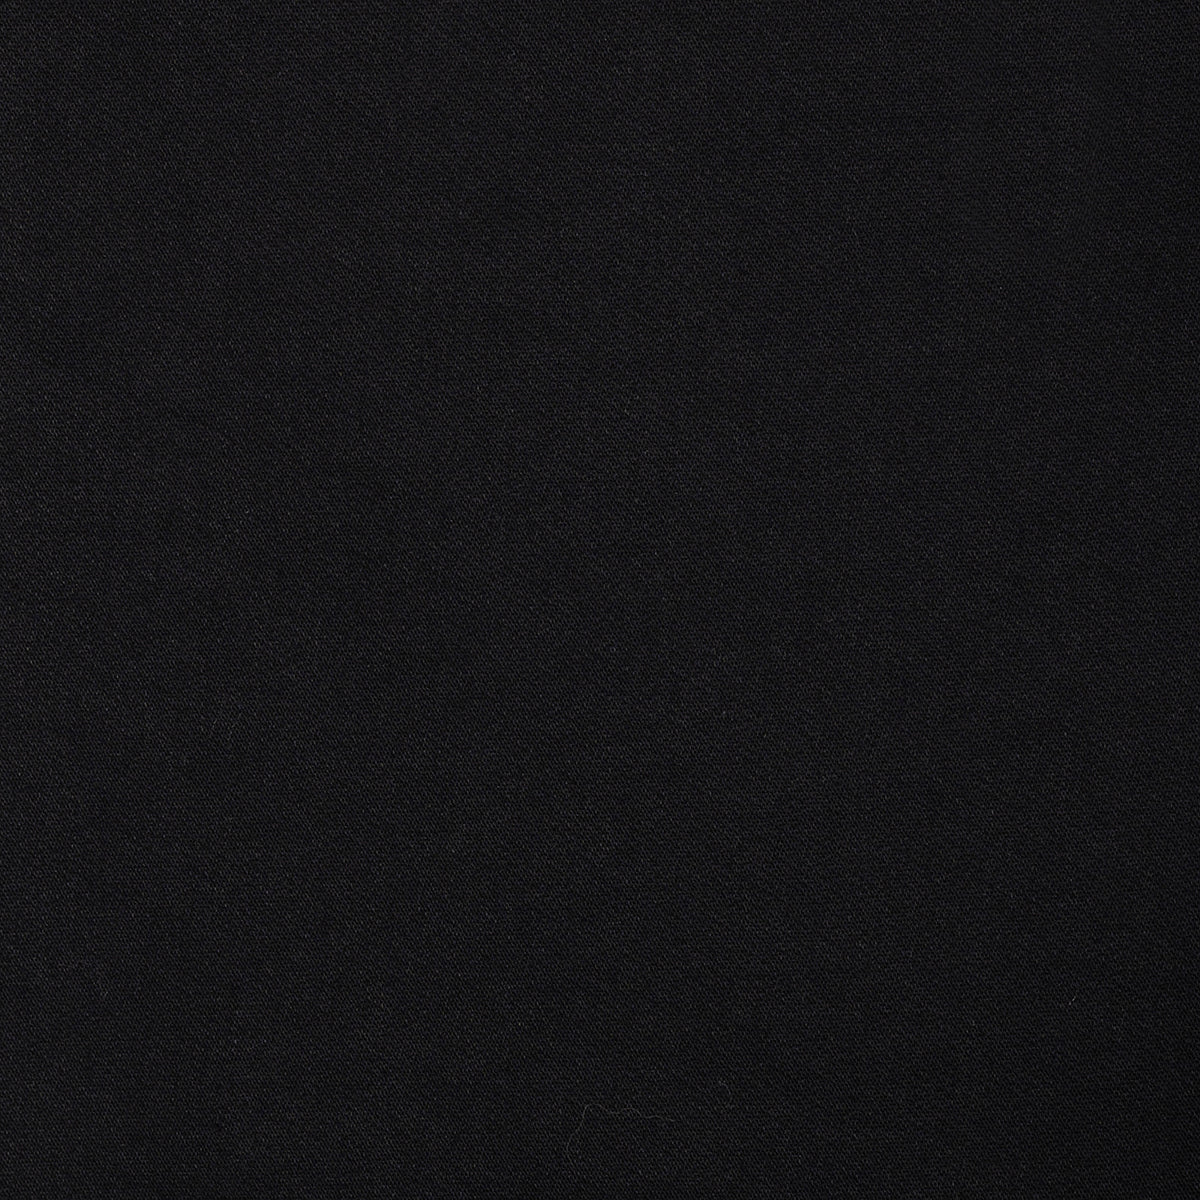 Pantalon sport en color negro de Perry Ellis PS00147031